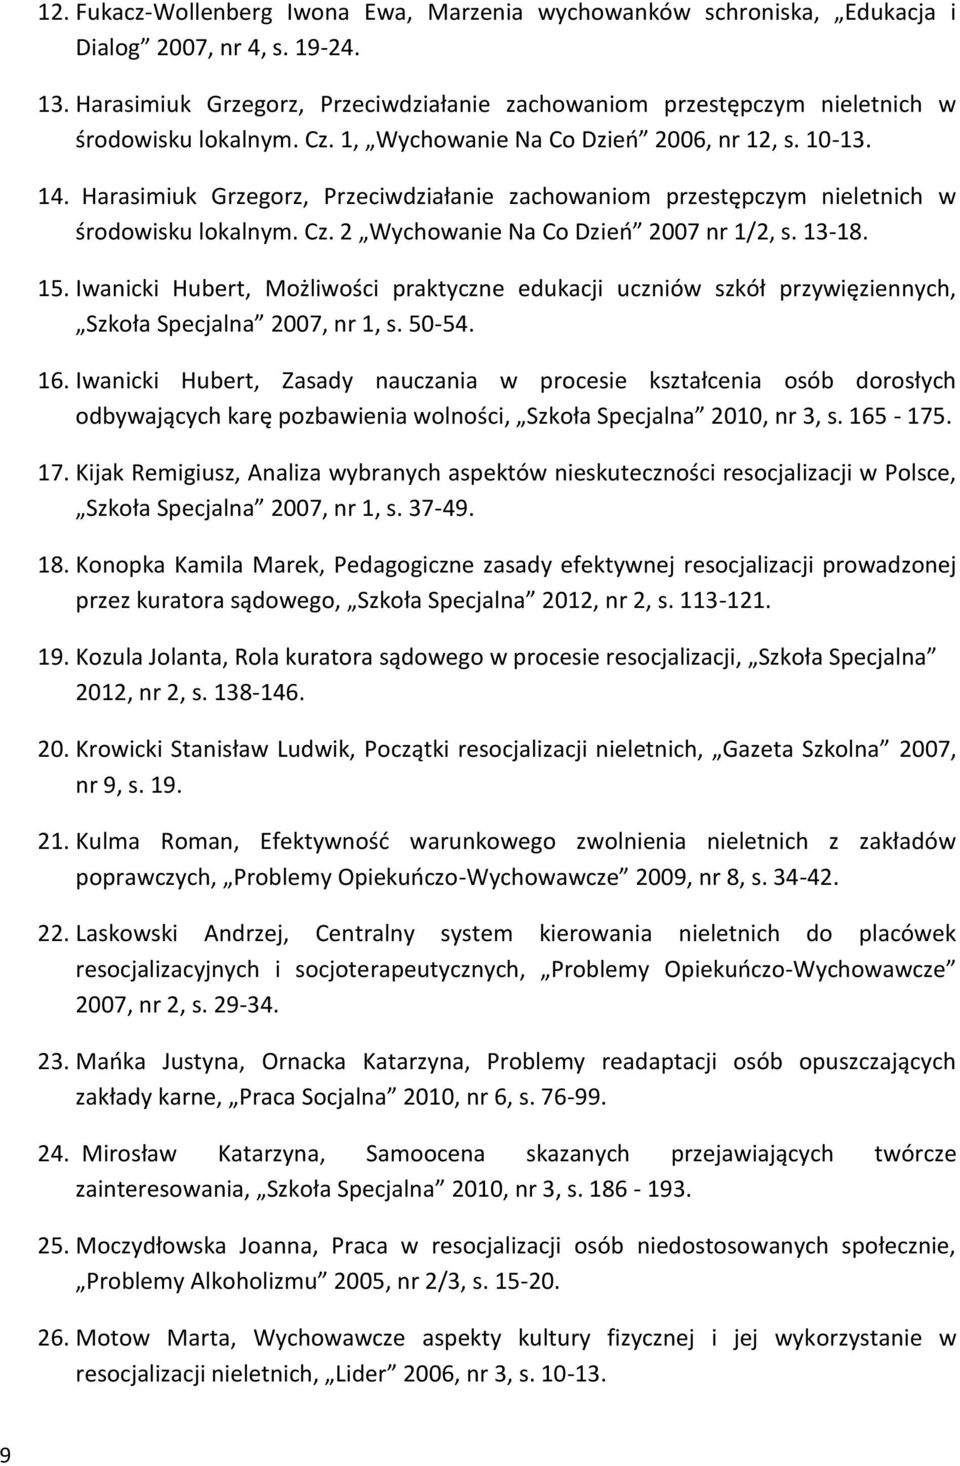 Harasimiuk Grzegorz, Przeciwdziałanie zachowaniom przestępczym nieletnich w środowisku lokalnym. Cz. 2 Wychowanie Na Co Dzień 2007 nr 1/2, s. 13-18. 15.